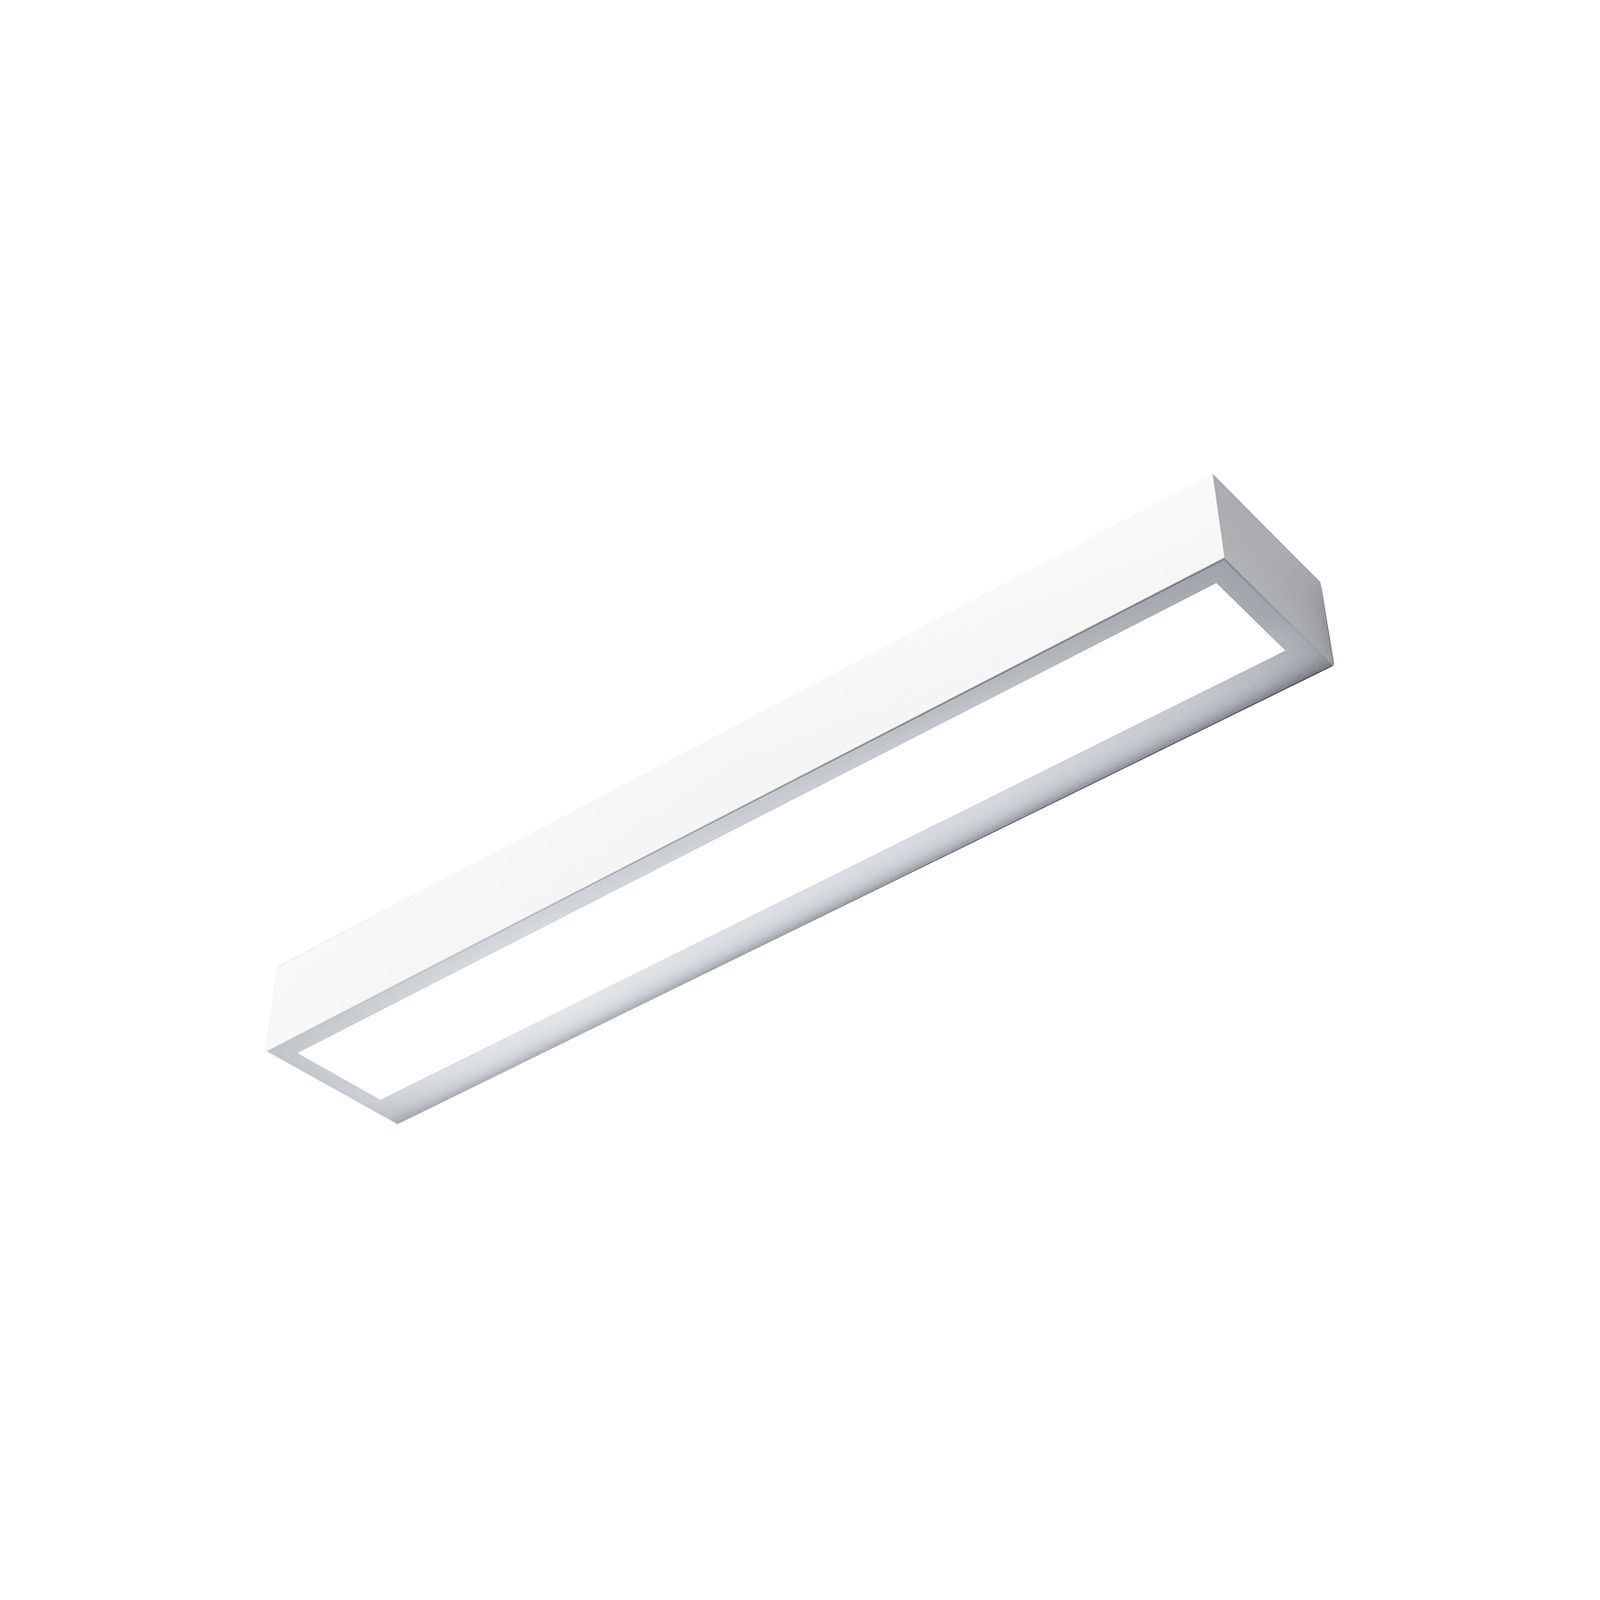 Mera LED wall light, width 40 cm, white, 4,000K